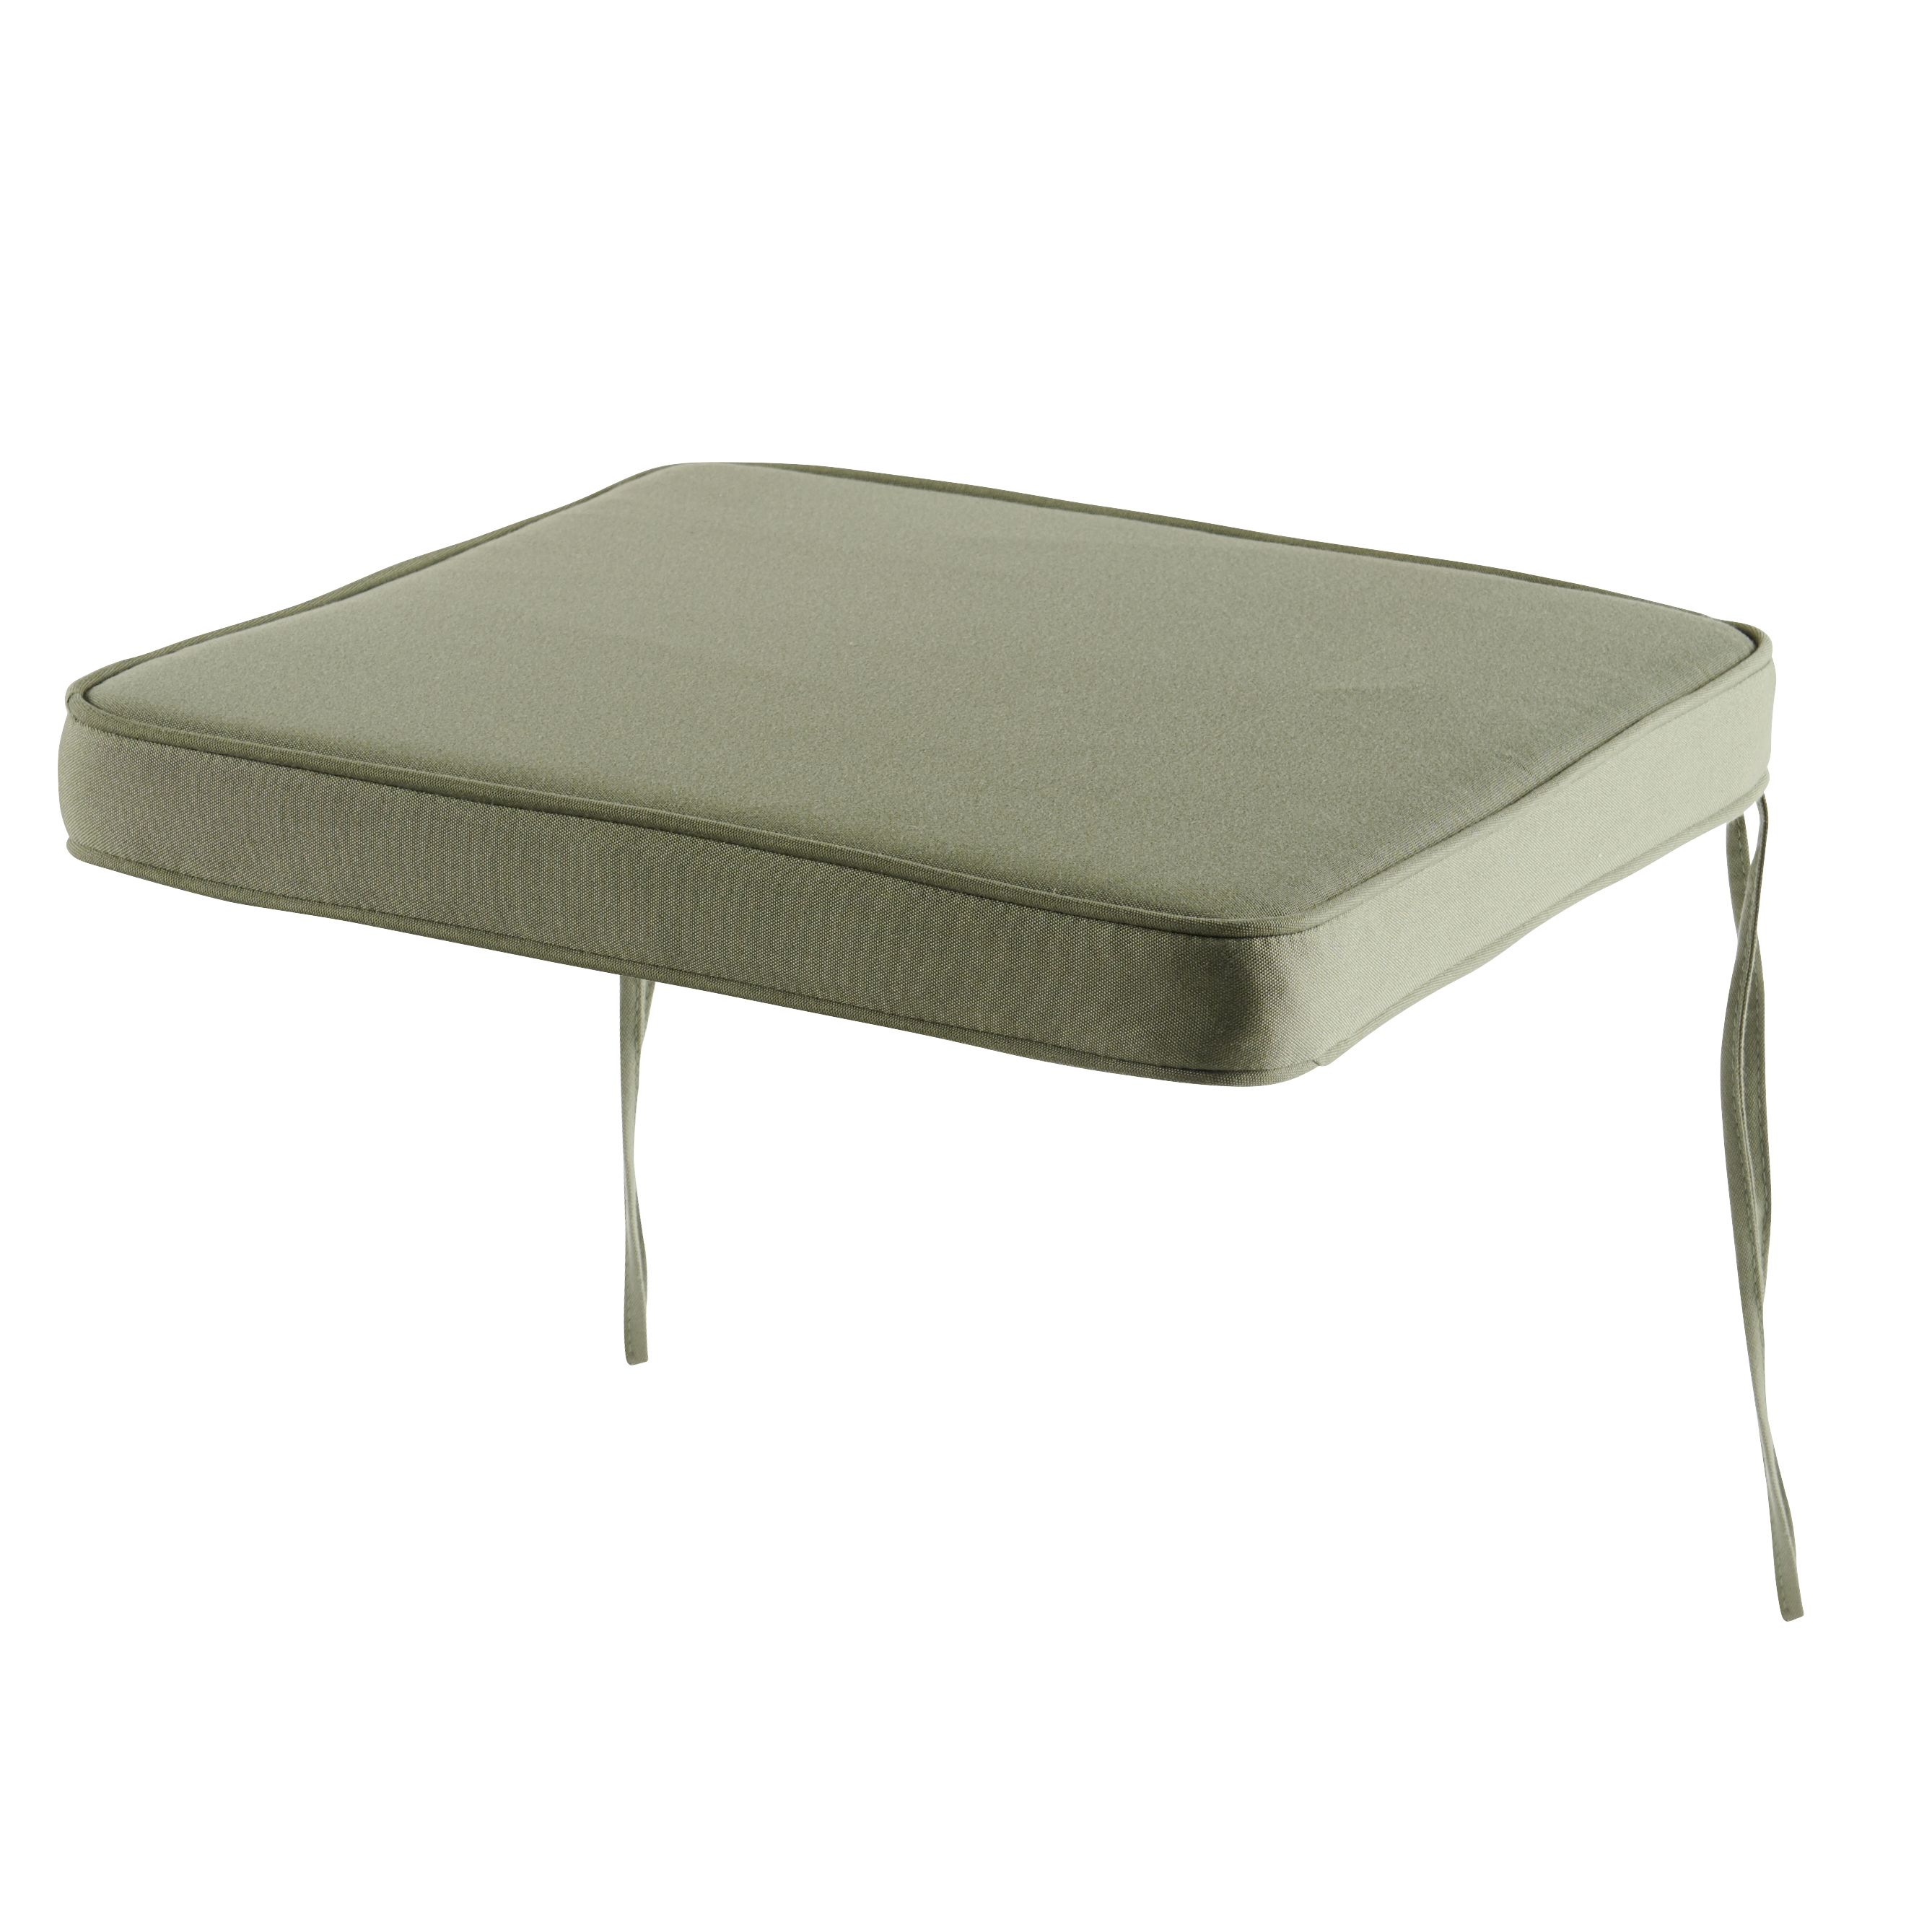 GoodHome Tiga Lichen green Plain Square Seat pad (L)40cm x (W)36cm